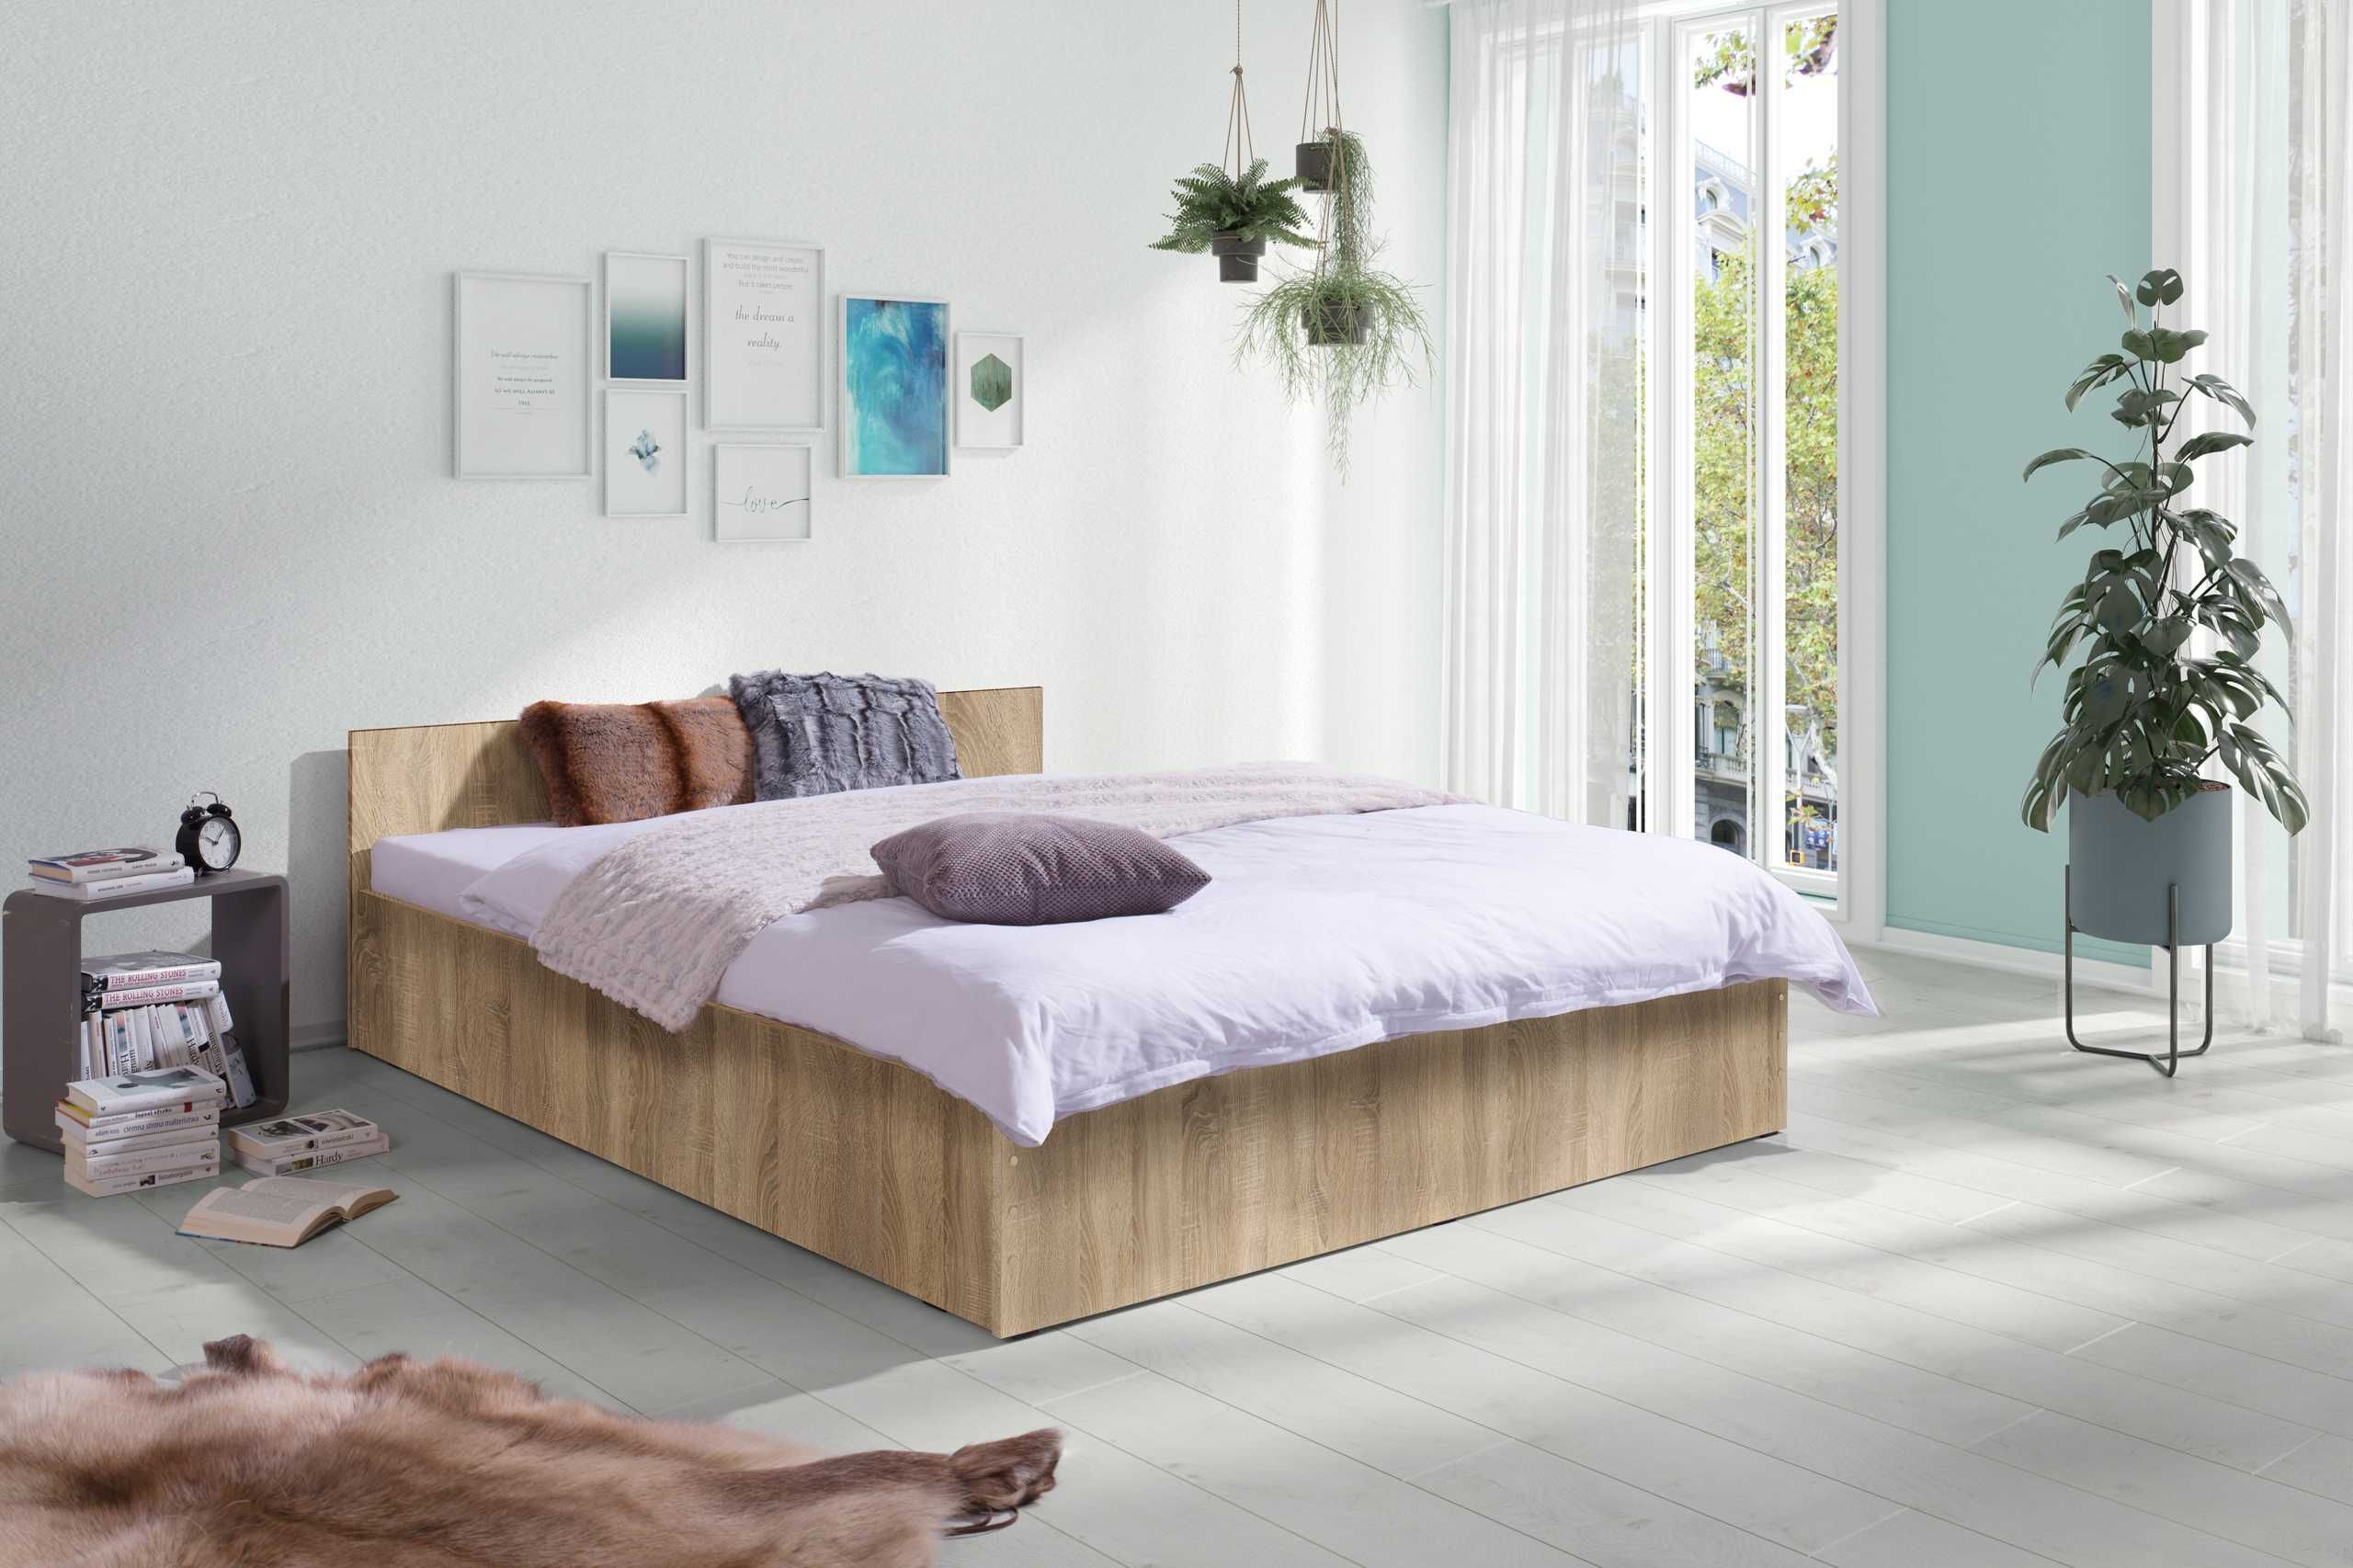 Łóżko Podwójne 160x200 + gruby materac + mocny drewniany stelaż NOWE